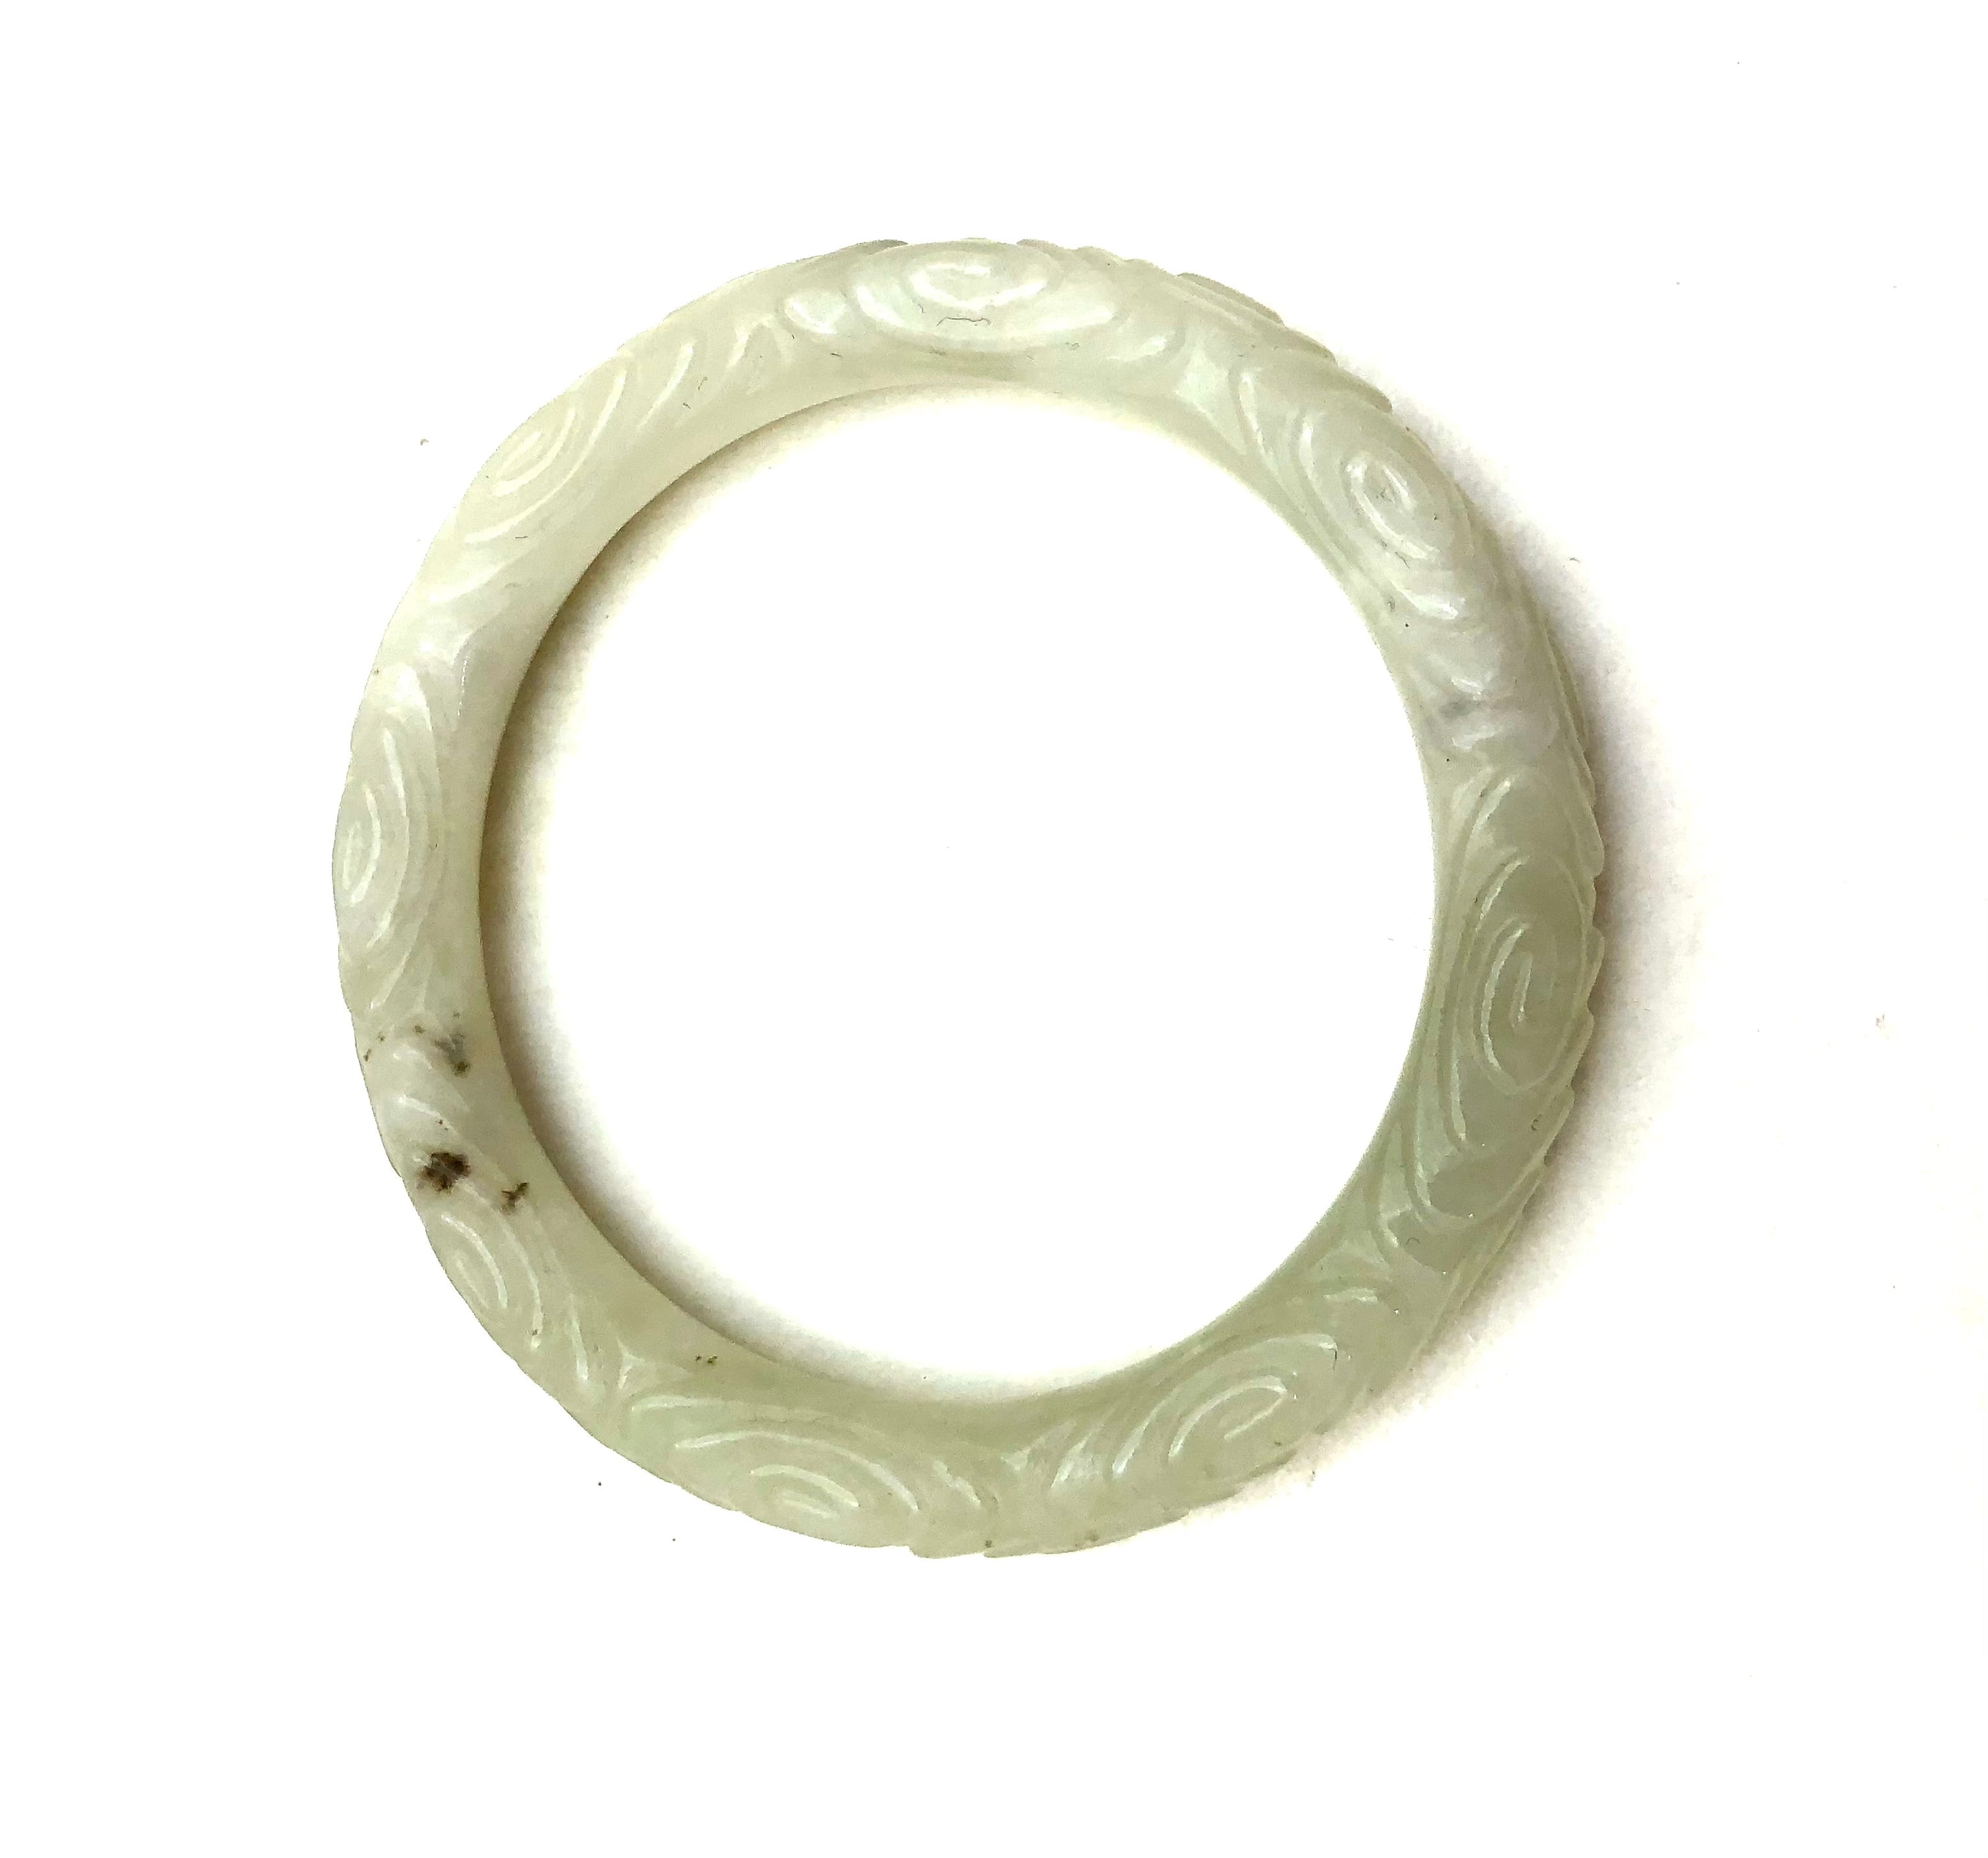 Antique Chinese Dynasty Carved Celadon Jade Flower Bangle Bracelet